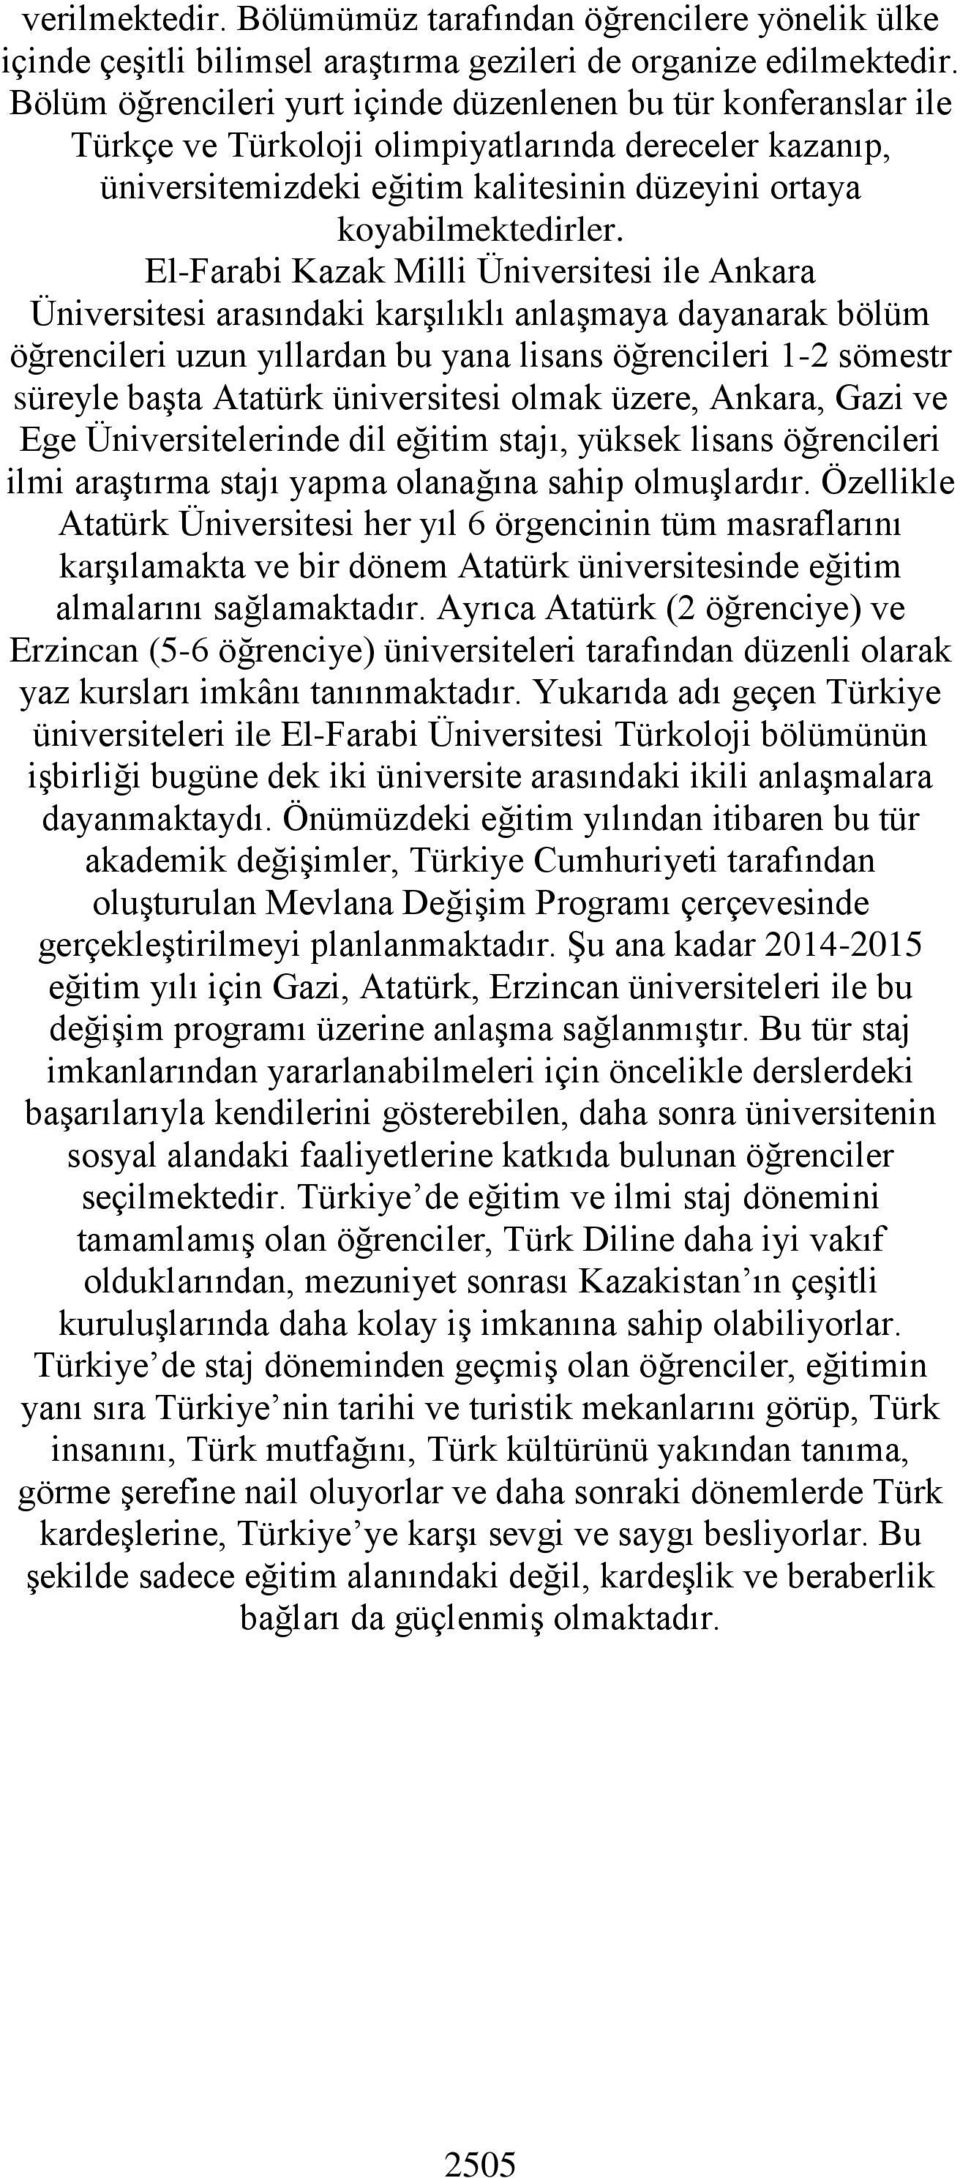 El-Farabi Kazak Milli Üniversitesi ile Ankara Üniversitesi arasındaki karşılıklı anlaşmaya dayanarak bölüm öğrencileri uzun yıllardan bu yana lisans öğrencileri 1-2 sömestr süreyle başta Atatürk